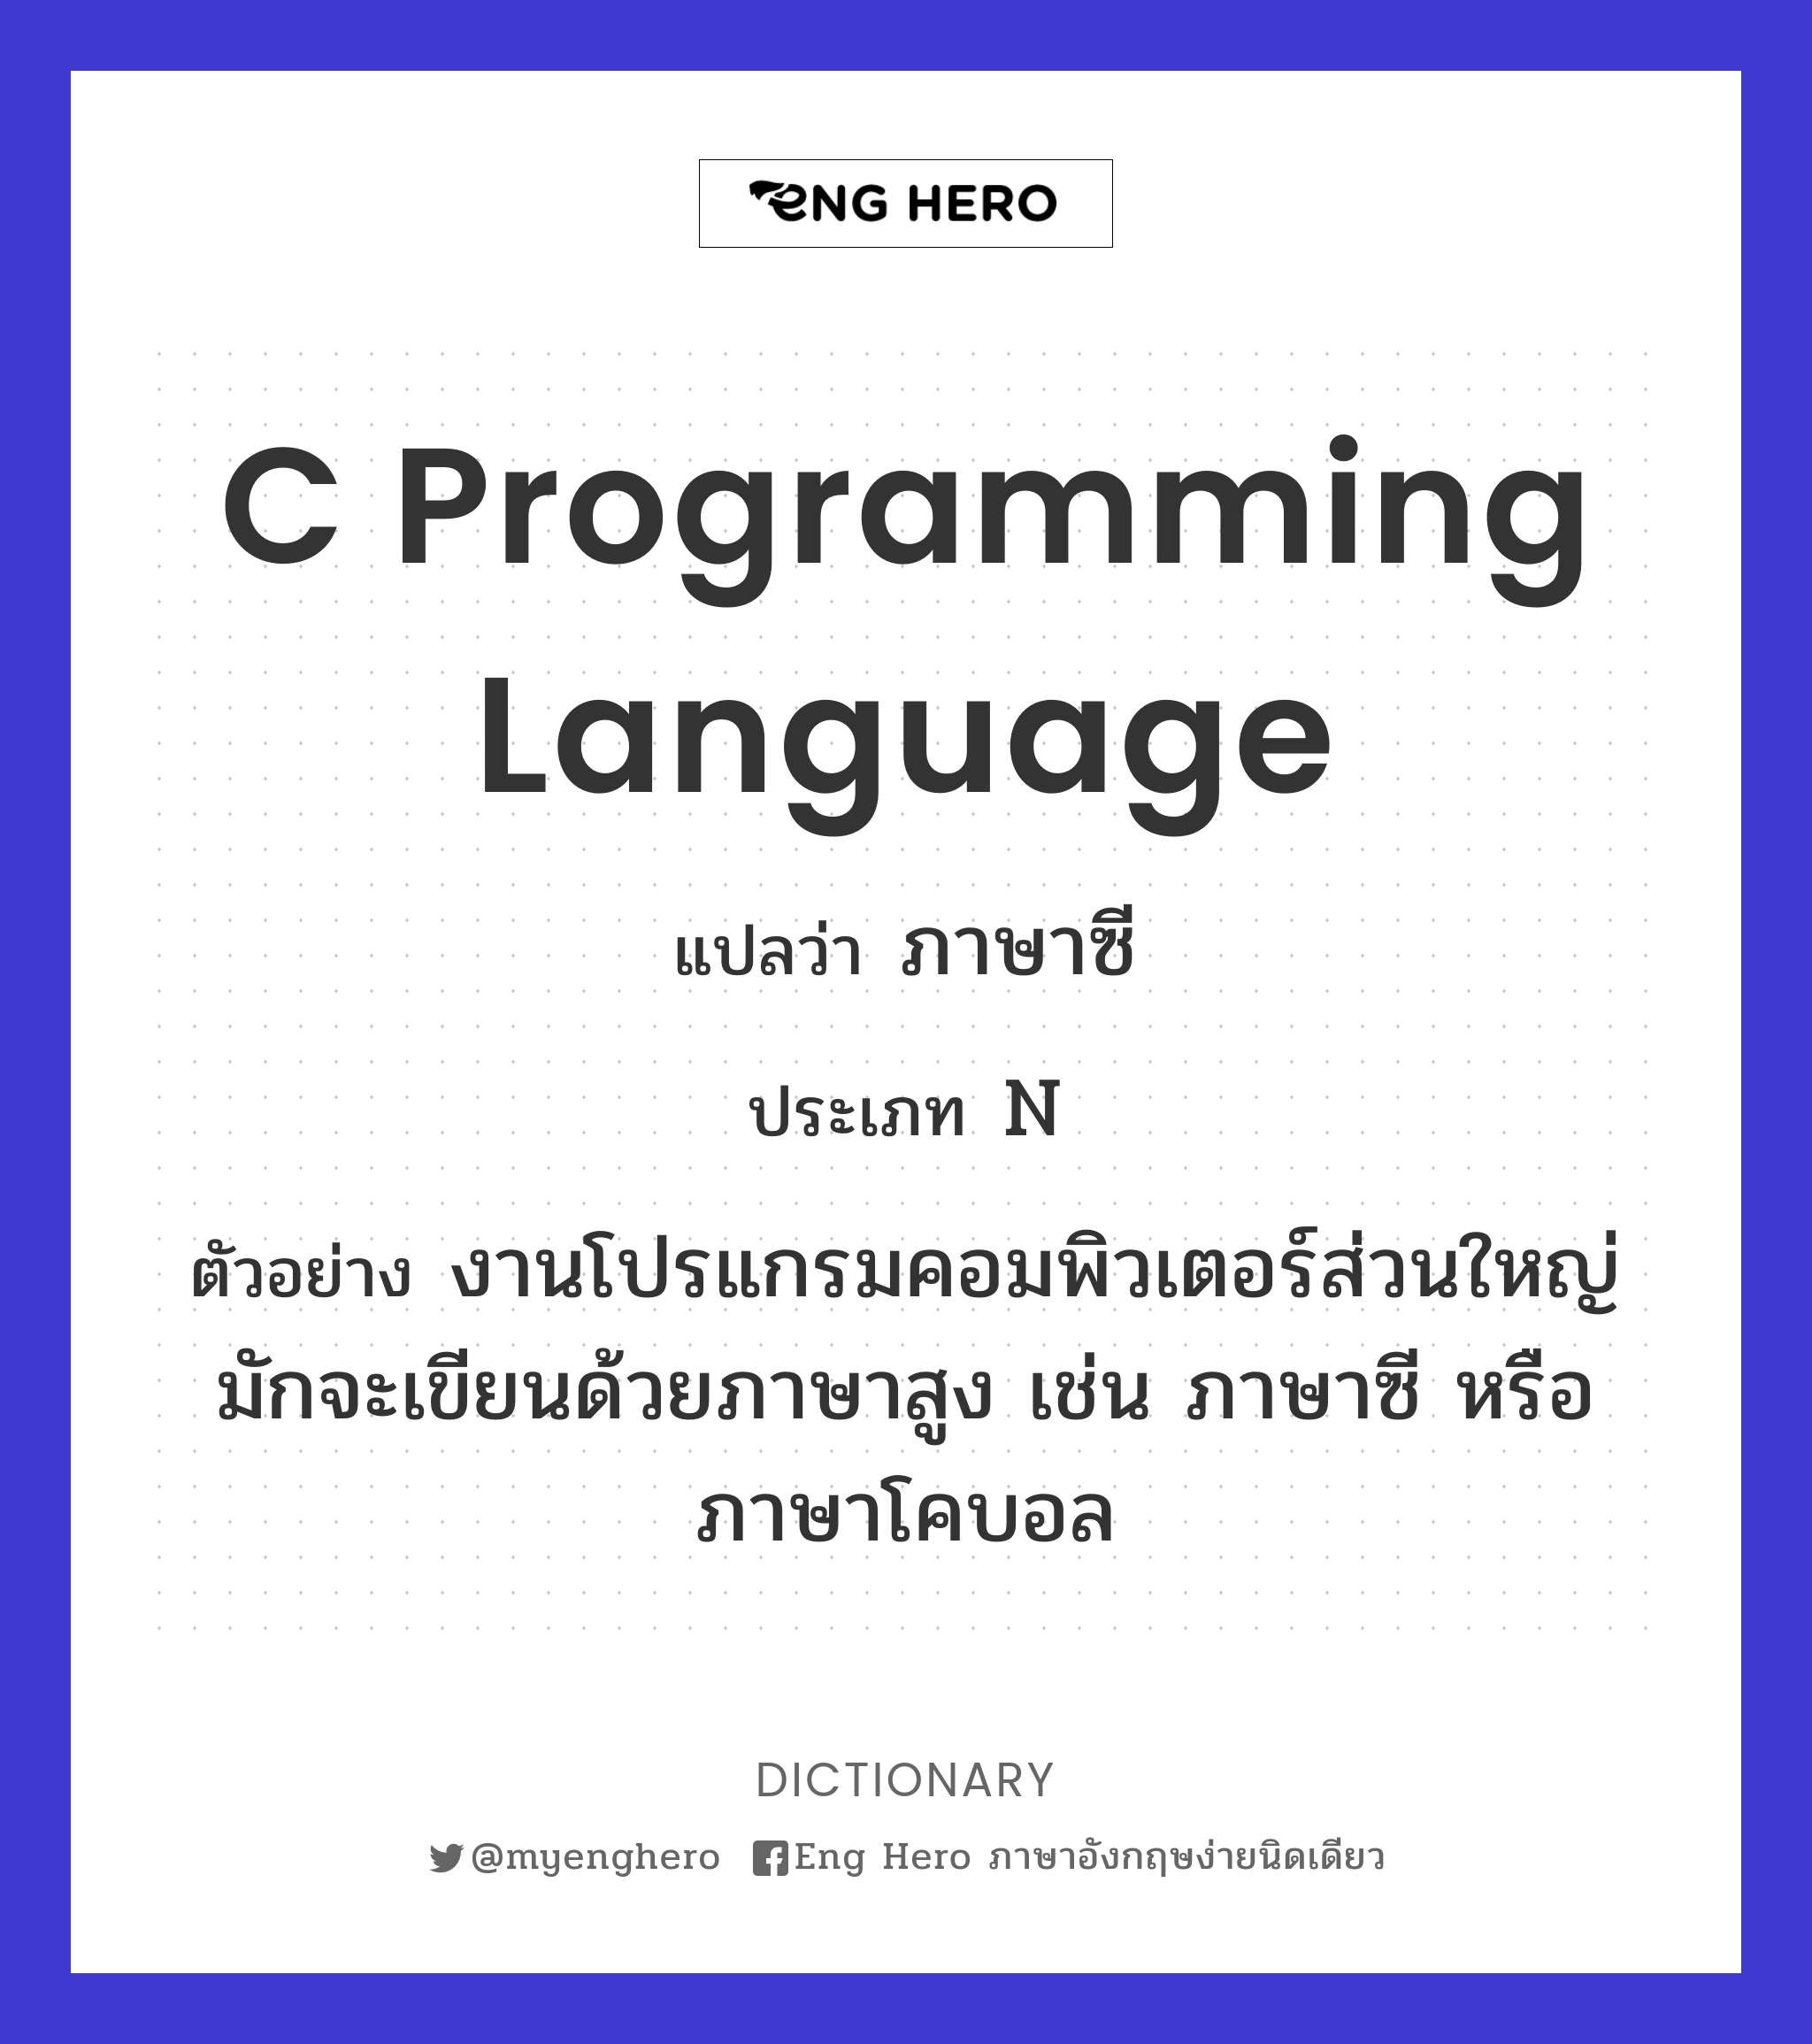 C programming language